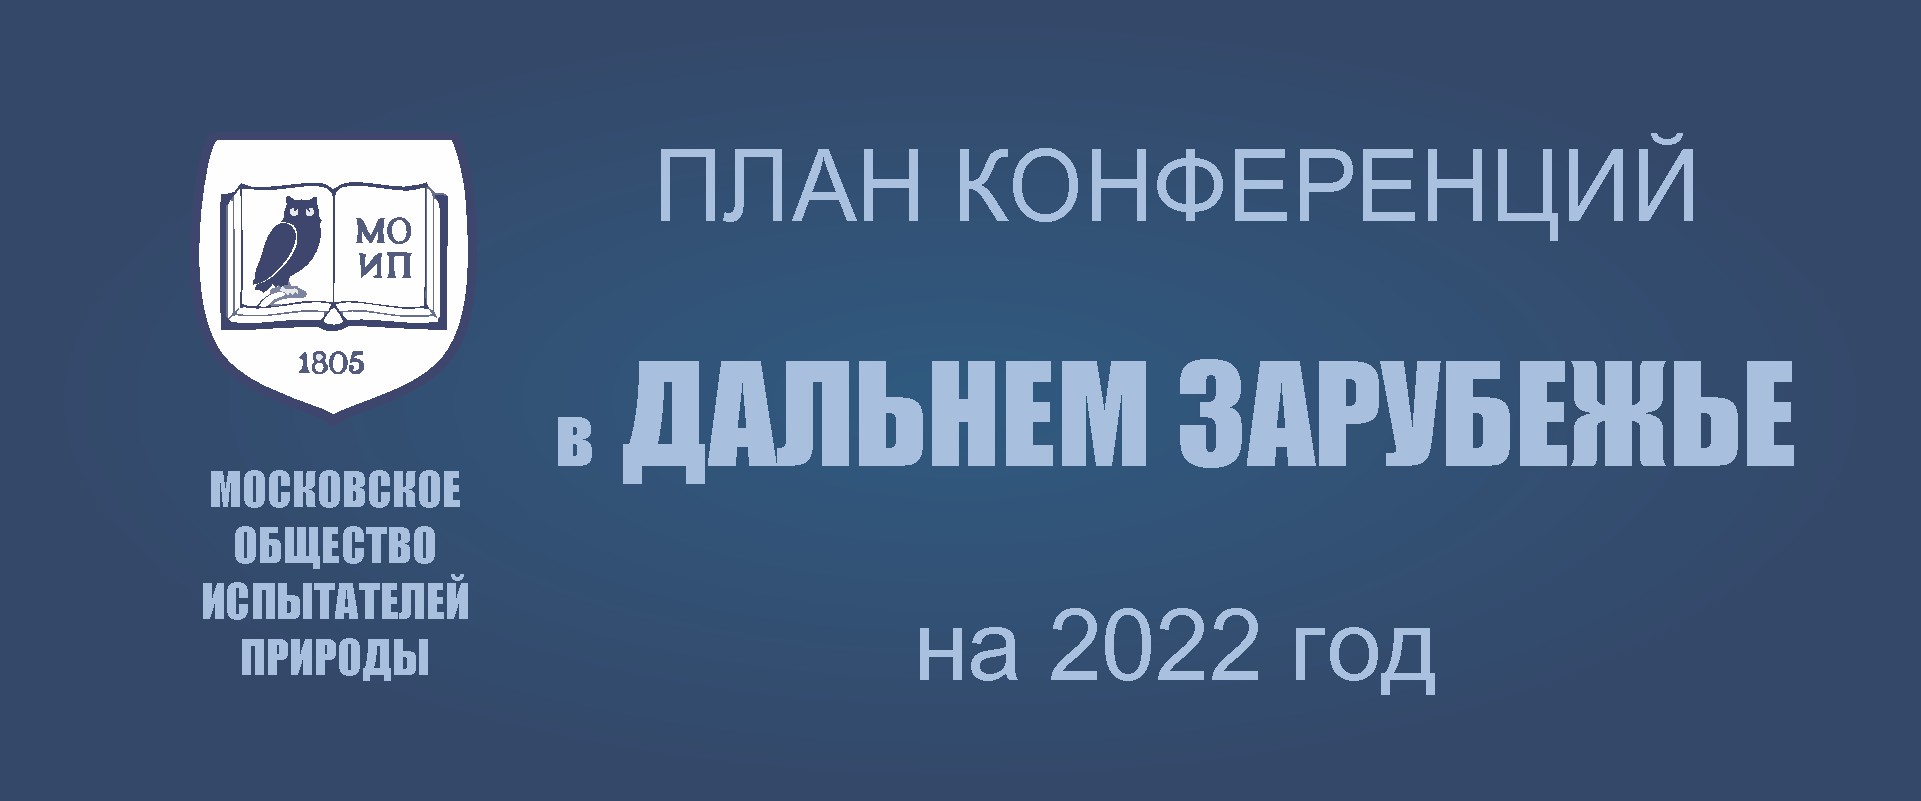 ПРЕДСТОЯЩИЕ КОНФЕРЕНЦИИ В ДАЛЬНЕМ ЗАРУБЕЖЬЕ  в 2022 году